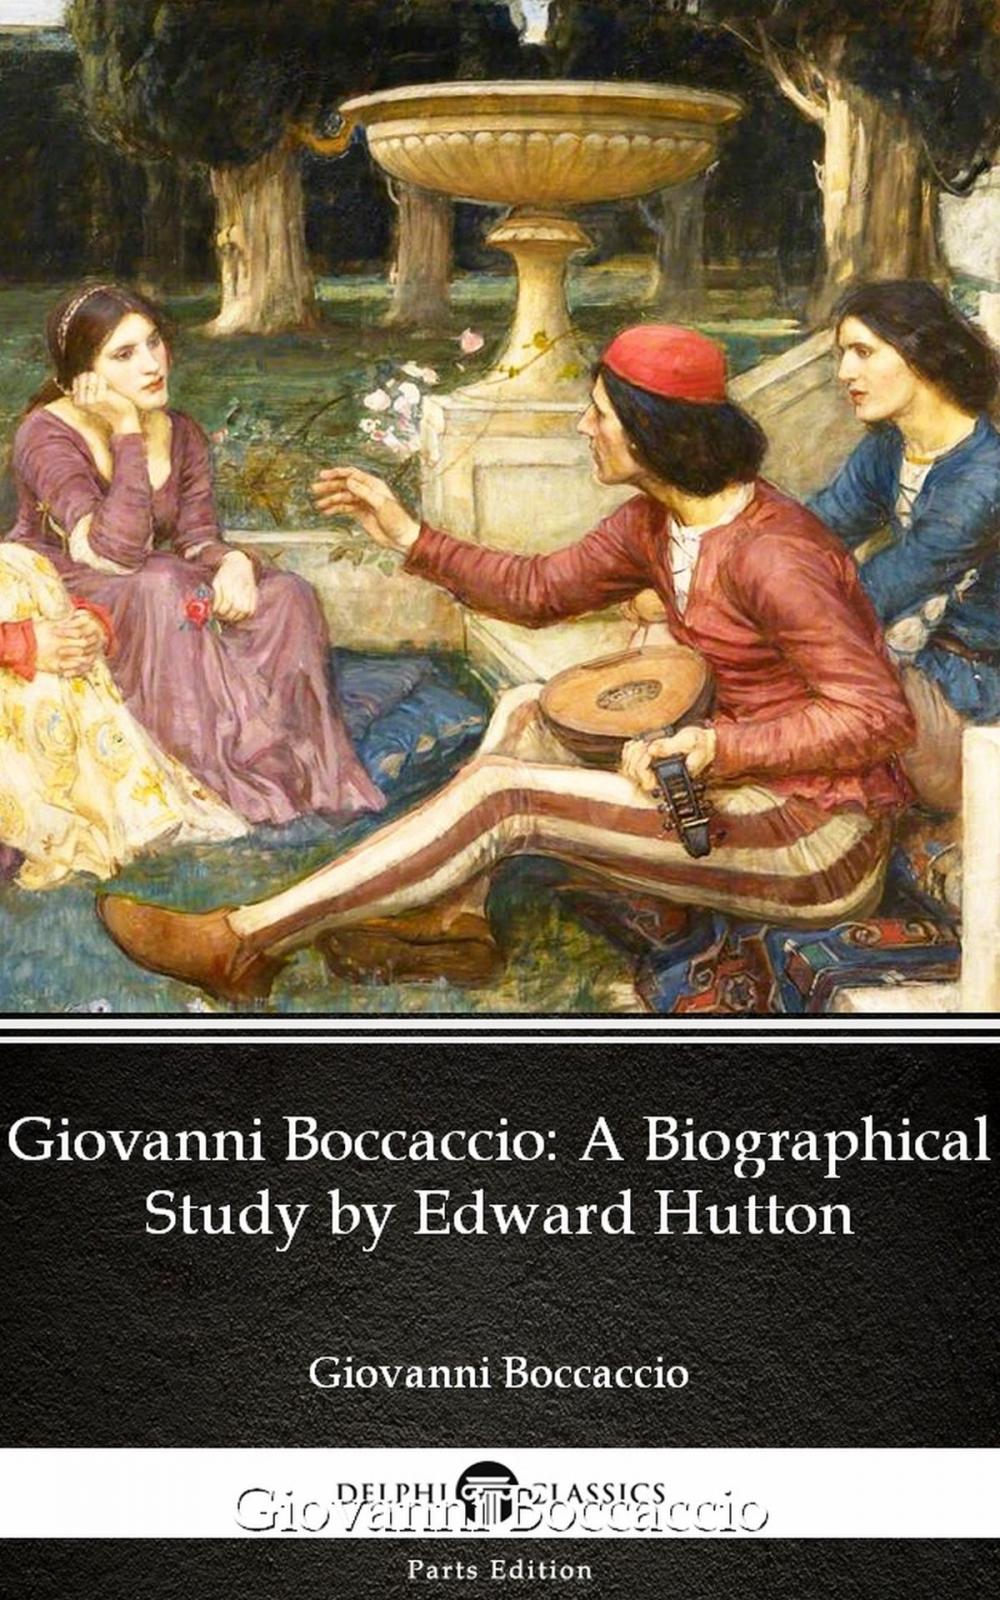 Big bigCover of Giovanni Boccaccio A Biographical Study by Edward Hutton - Delphi Classics (Illustrated)